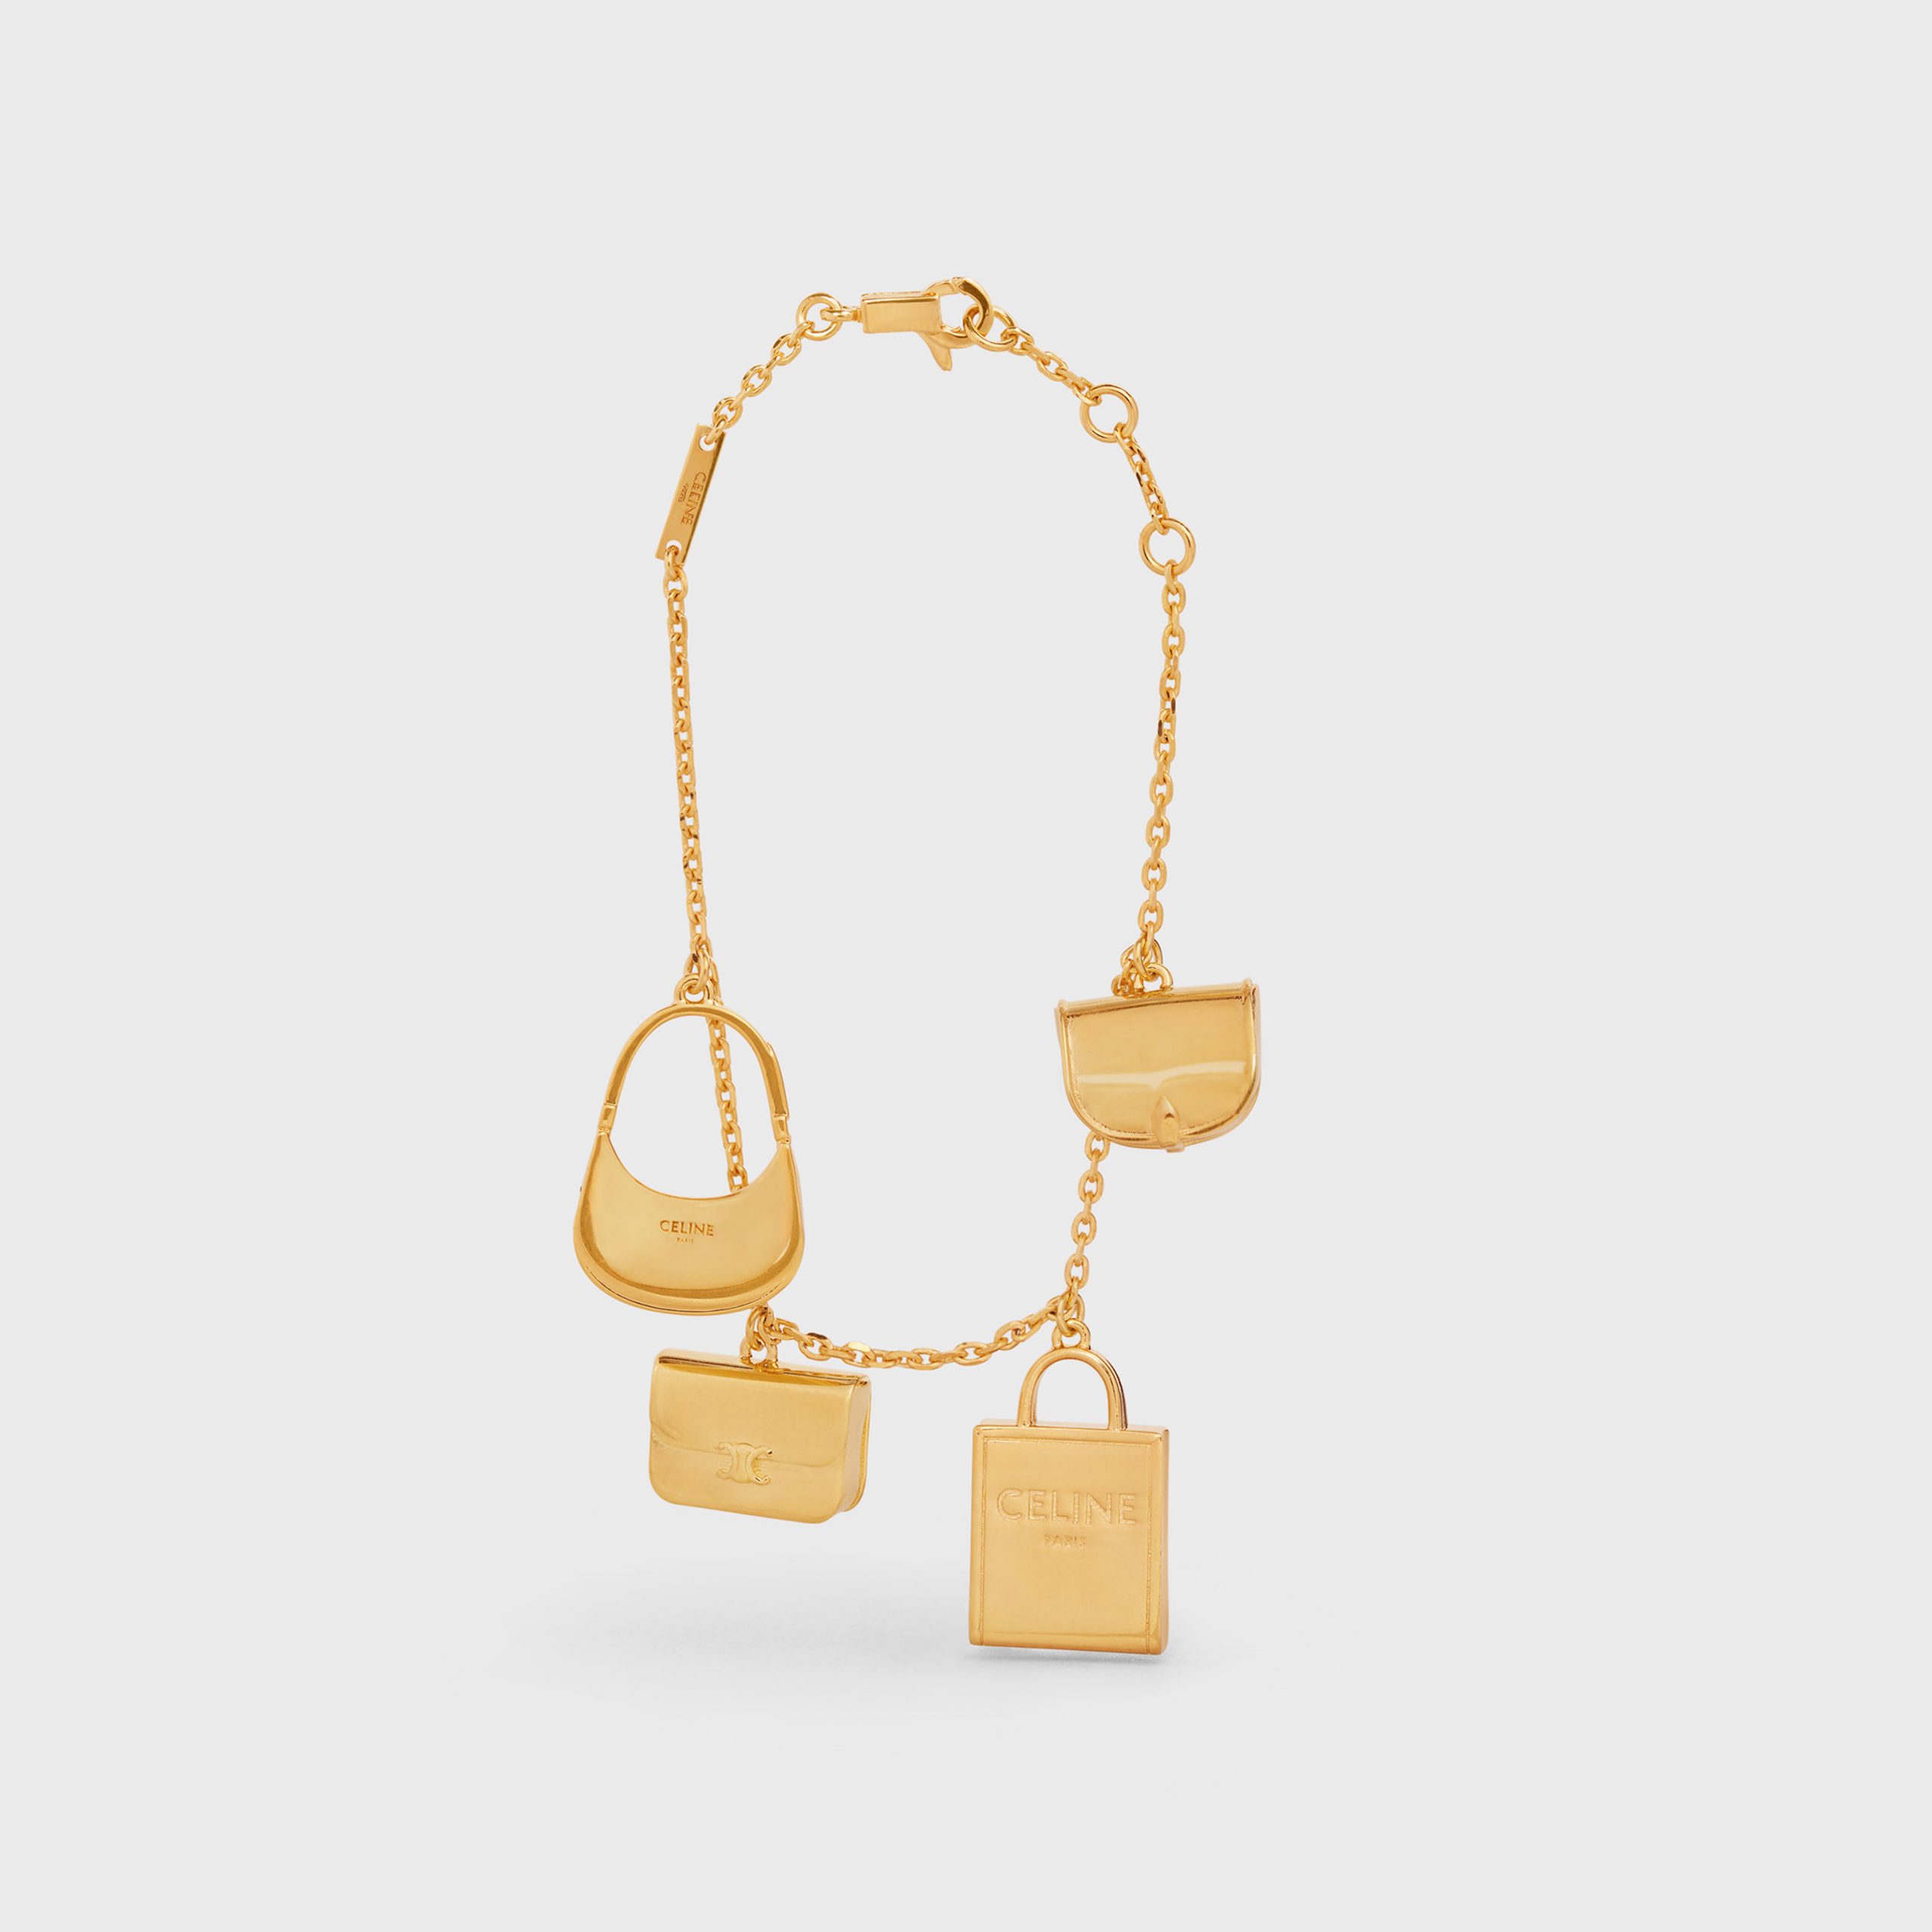 Celine Celine Separables Bag Charms Bracelet In Brass With Gold Finish – Gold – 46Y066BRA.35OR